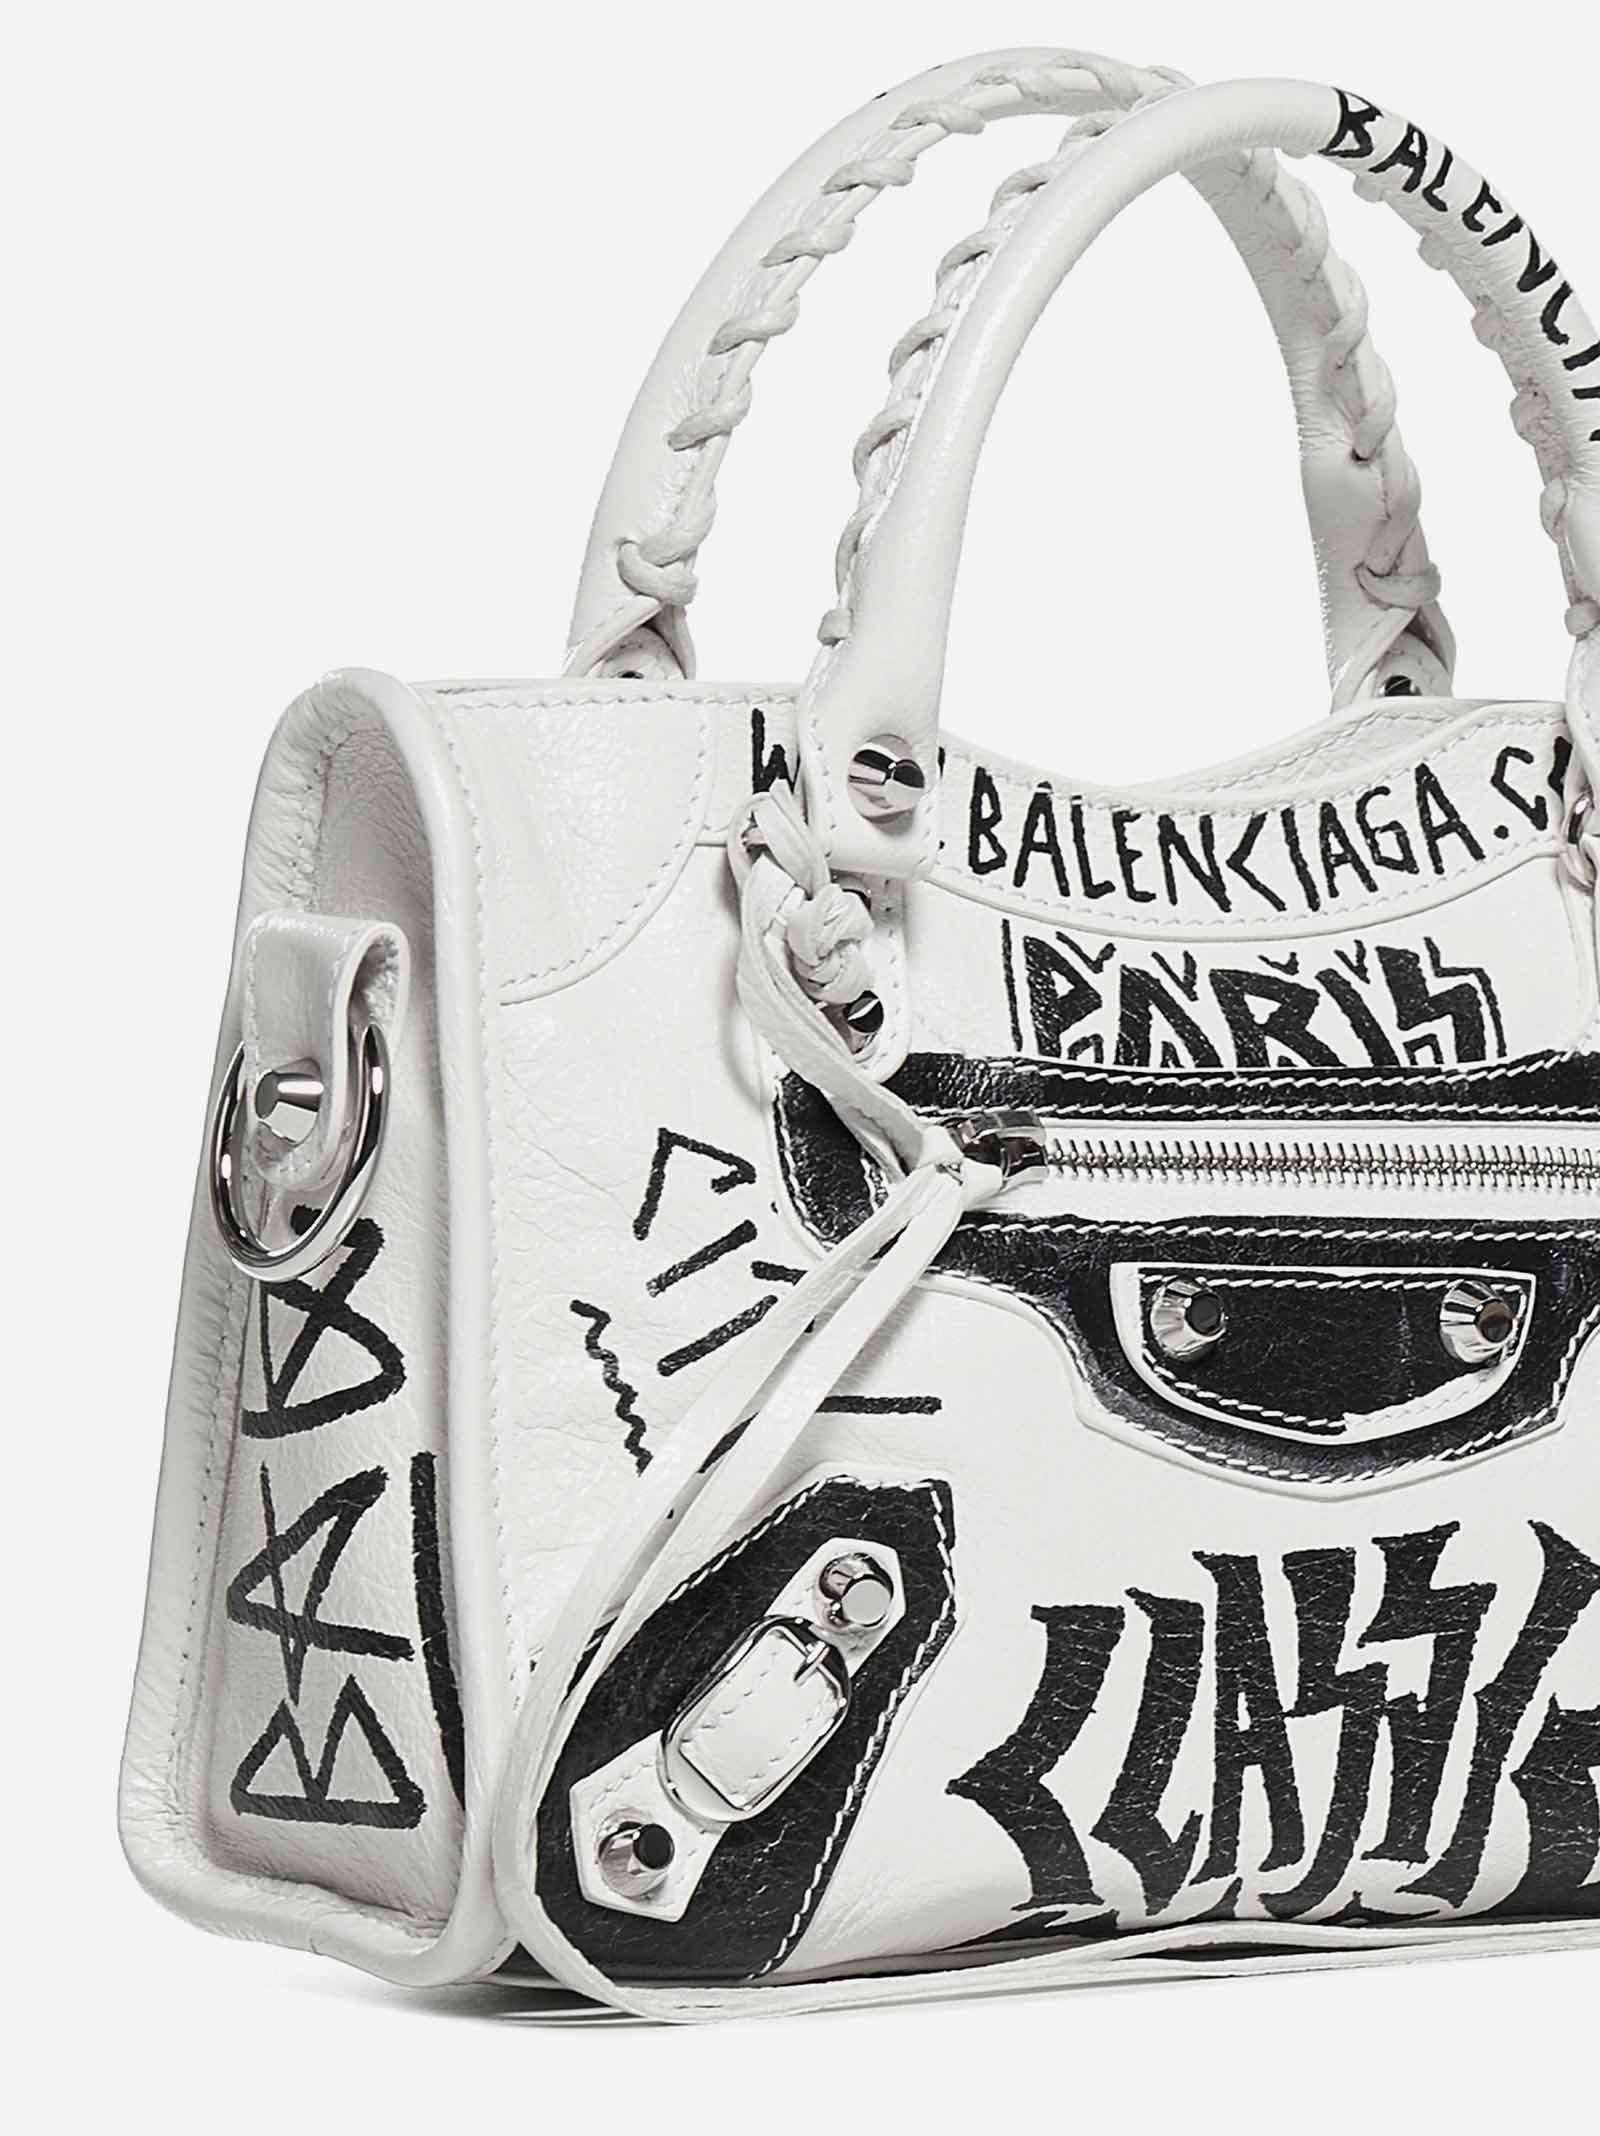 Balenciaga Mini City Graffiti Leather Bag In White Multi